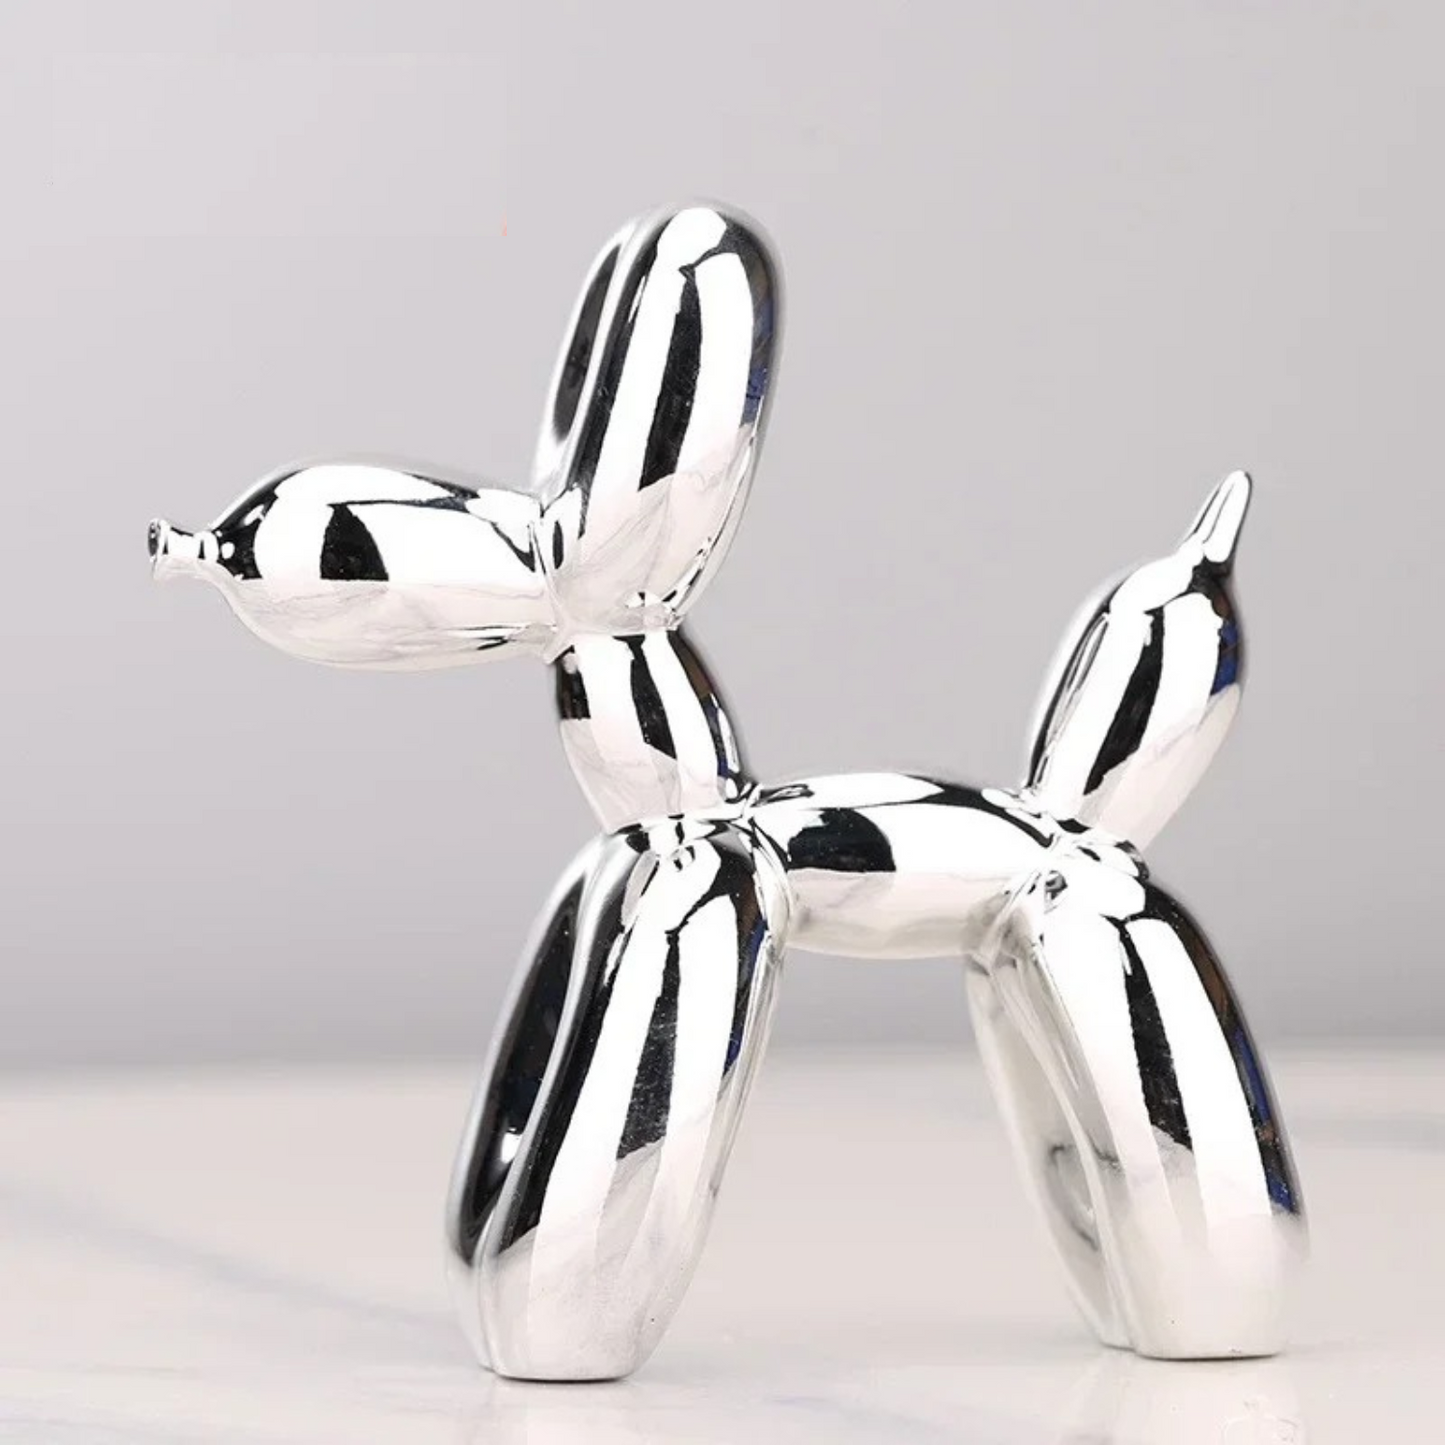 ArtZ® Balloon Dog Sculpture